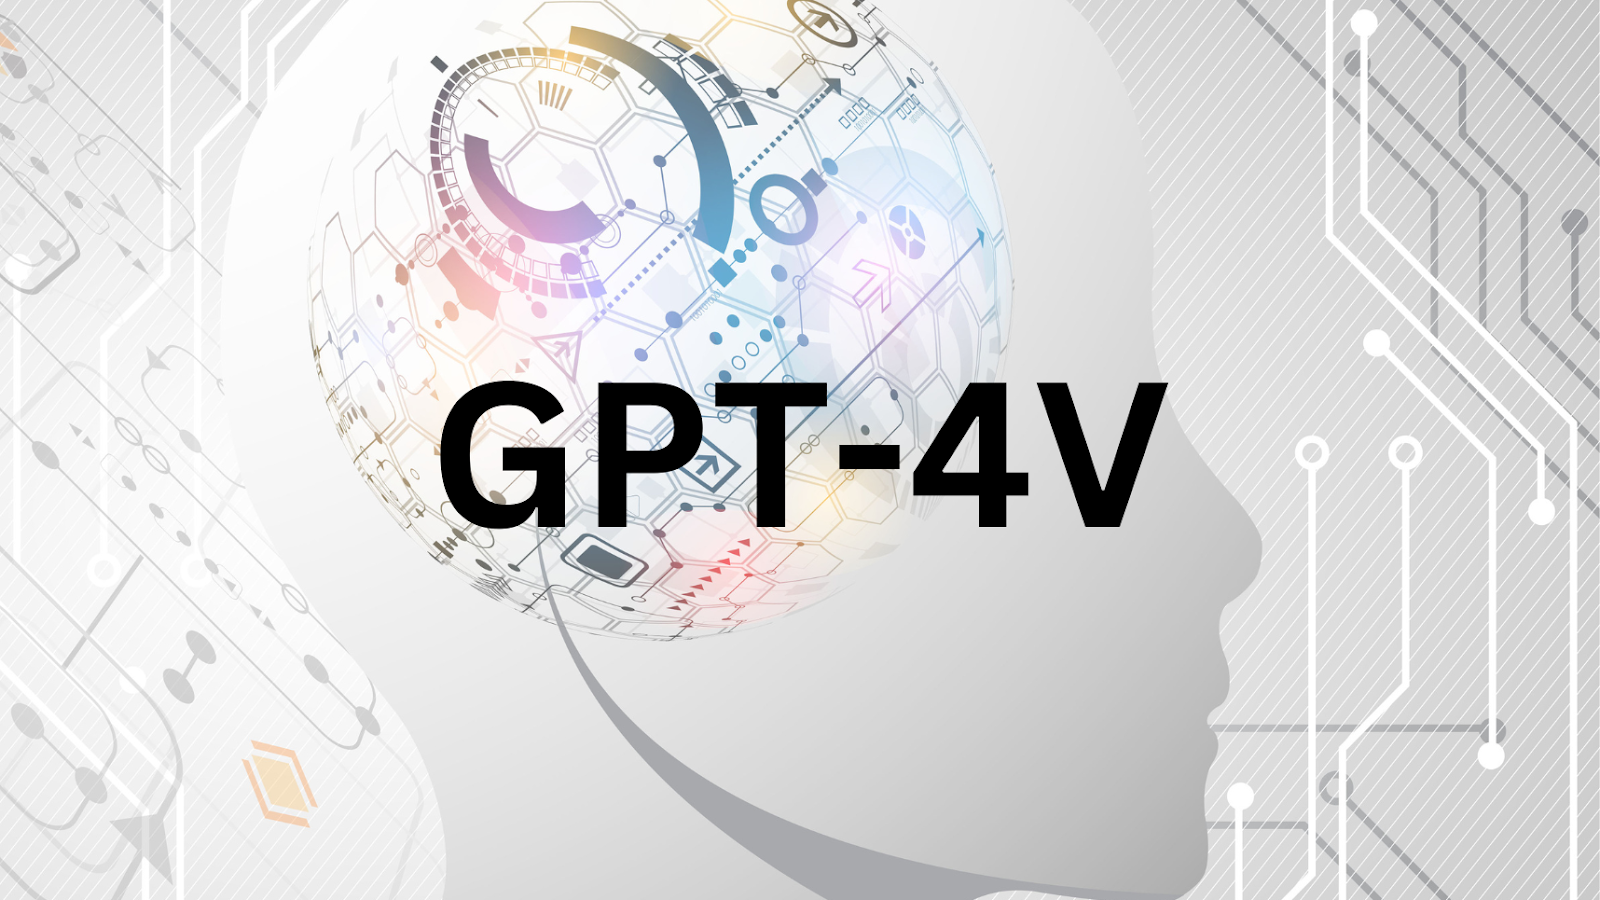 GPT-4V- Multimodal AI